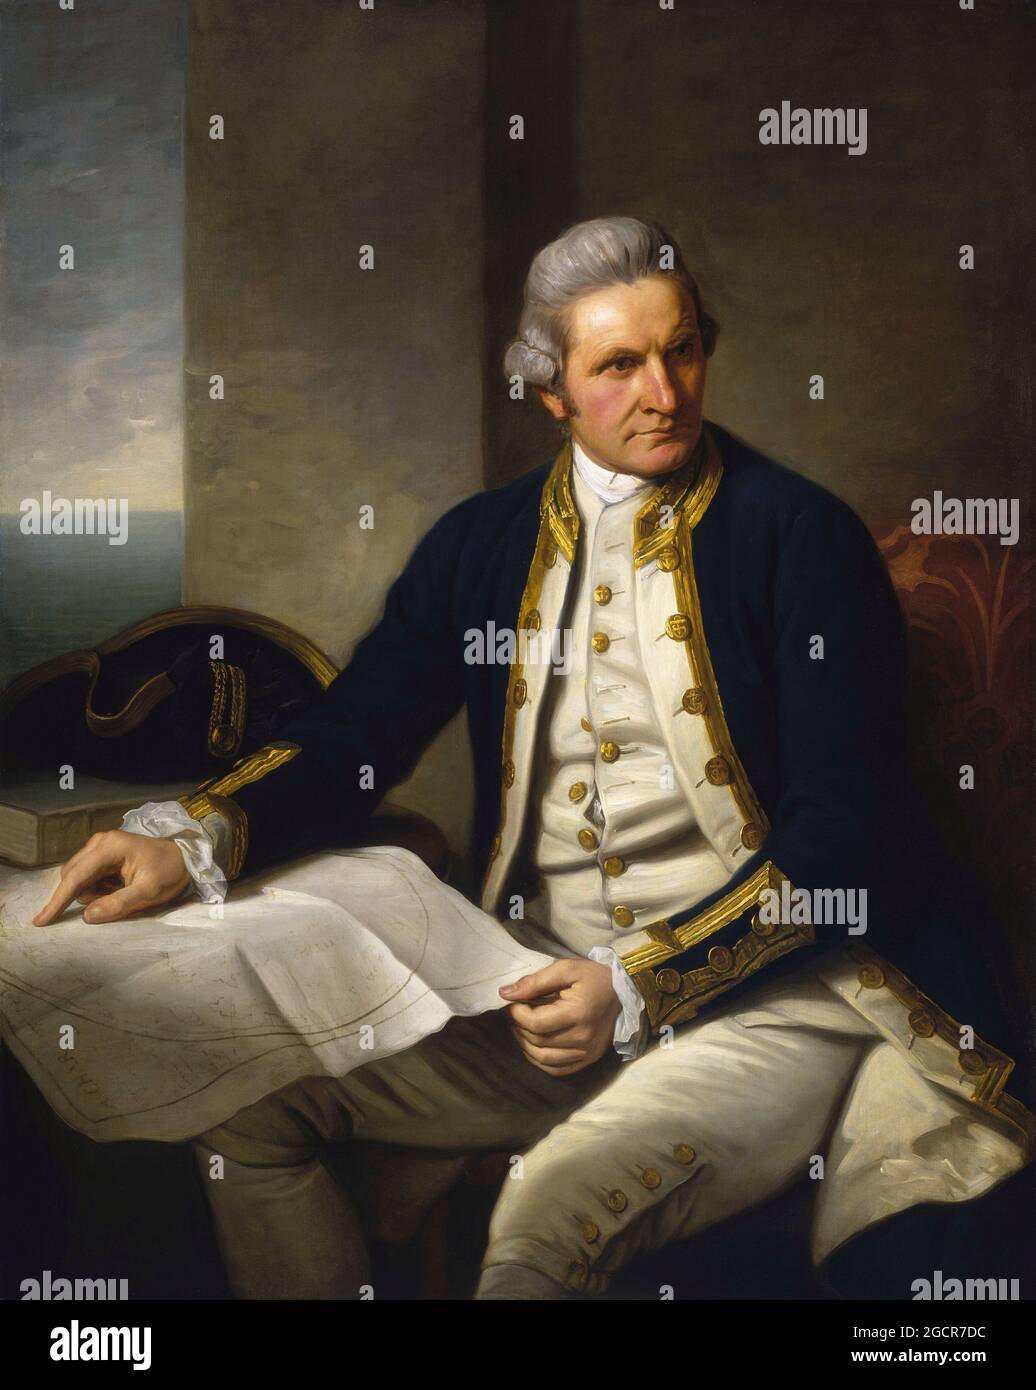 Capitaine James Cook (1728-1779). Peinture à l'huile sur toile par Nathaniel Dance-Holland (1735-1811), c. 1775. James Cook FRS RN (7 novembre 1728 – 14 février 1779) est un explorateur, navigateur et cartographe britannique, qui a finalement atteint le rang de capitaine dans la Marine royale. Cook a été le premier à cartographier Terre-Neuve avant de faire trois voyages dans l'océan Pacifique, au cours desquels il a atteint le premier contact européen avec la côte est de l'Australie et les îles hawaïennes ainsi que le premier tour de la Nouvelle-Zélande enregistré. Cook est mort à Hawaï dans un combat avec les Hawaiian. Banque D'Images